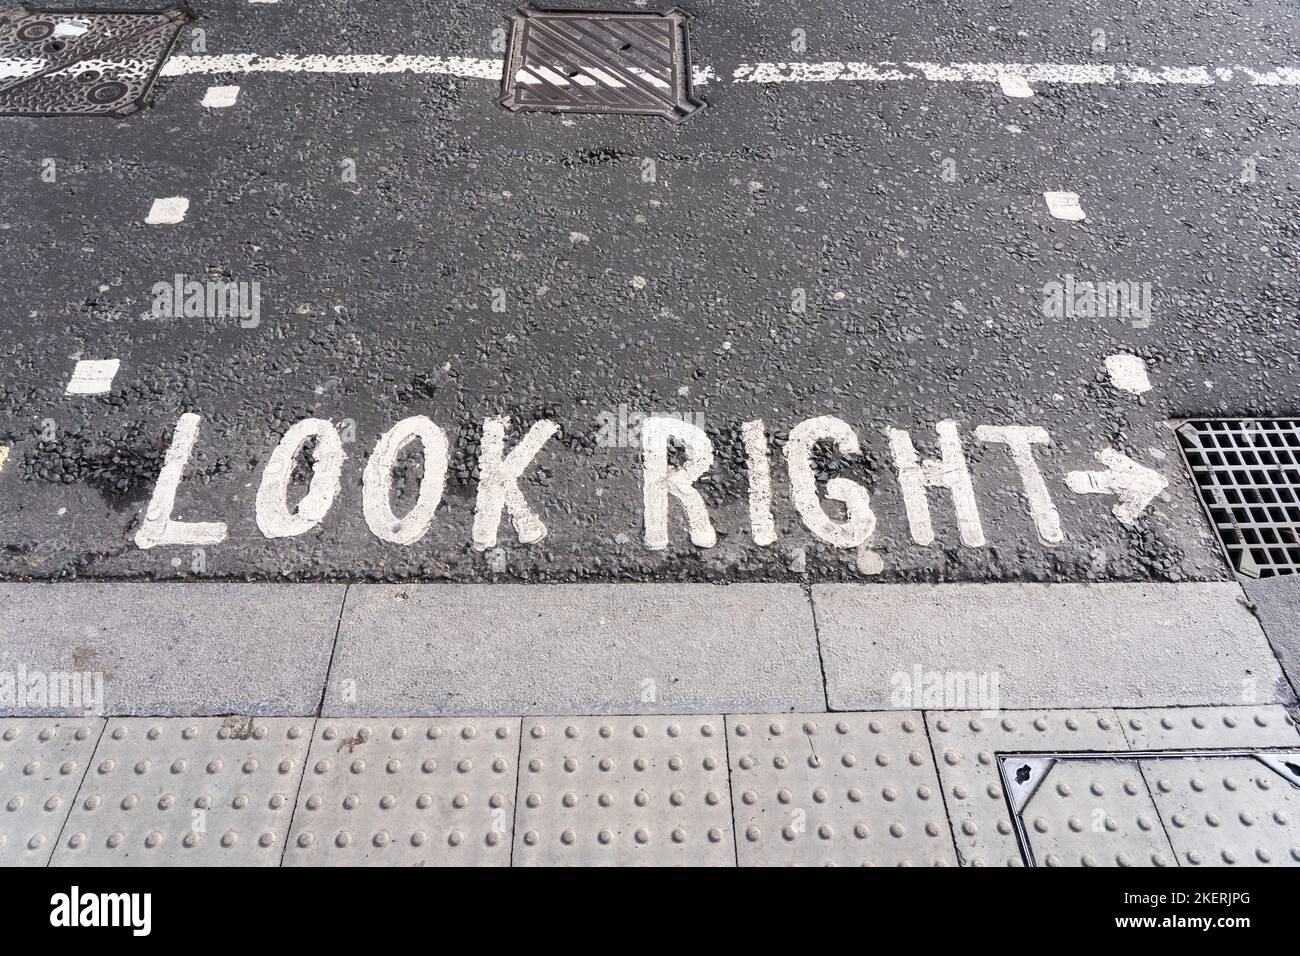 Icónico camino pintado 'Look Right' para peatones en Londres, Inglaterra. Concepto: Cruce de la carretera, seguridad vial, seguridad peatonal Foto de stock